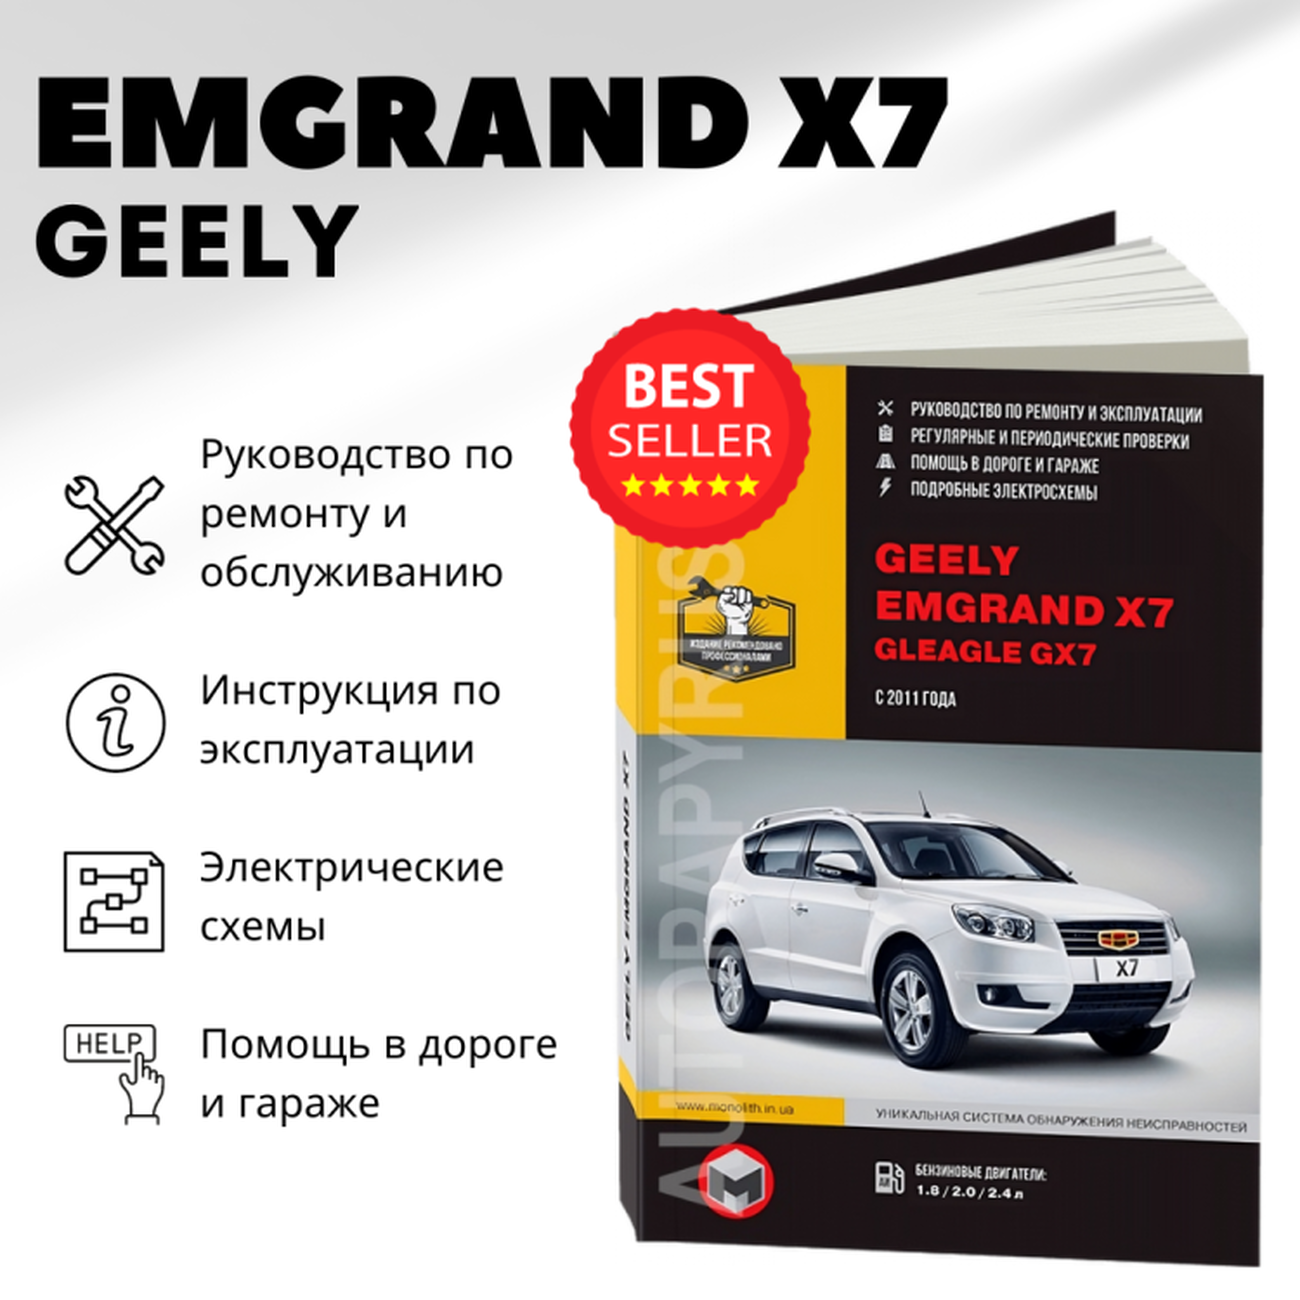 Автокнига: руководство / инструкция по ремонту и эксплуатации GEELY EMGRAND X7 / GLEAGLE GX7 (джили емгранд ИКС7) бензин с 2011 года выпуска  978-617-537-171-8 издательство Монолит